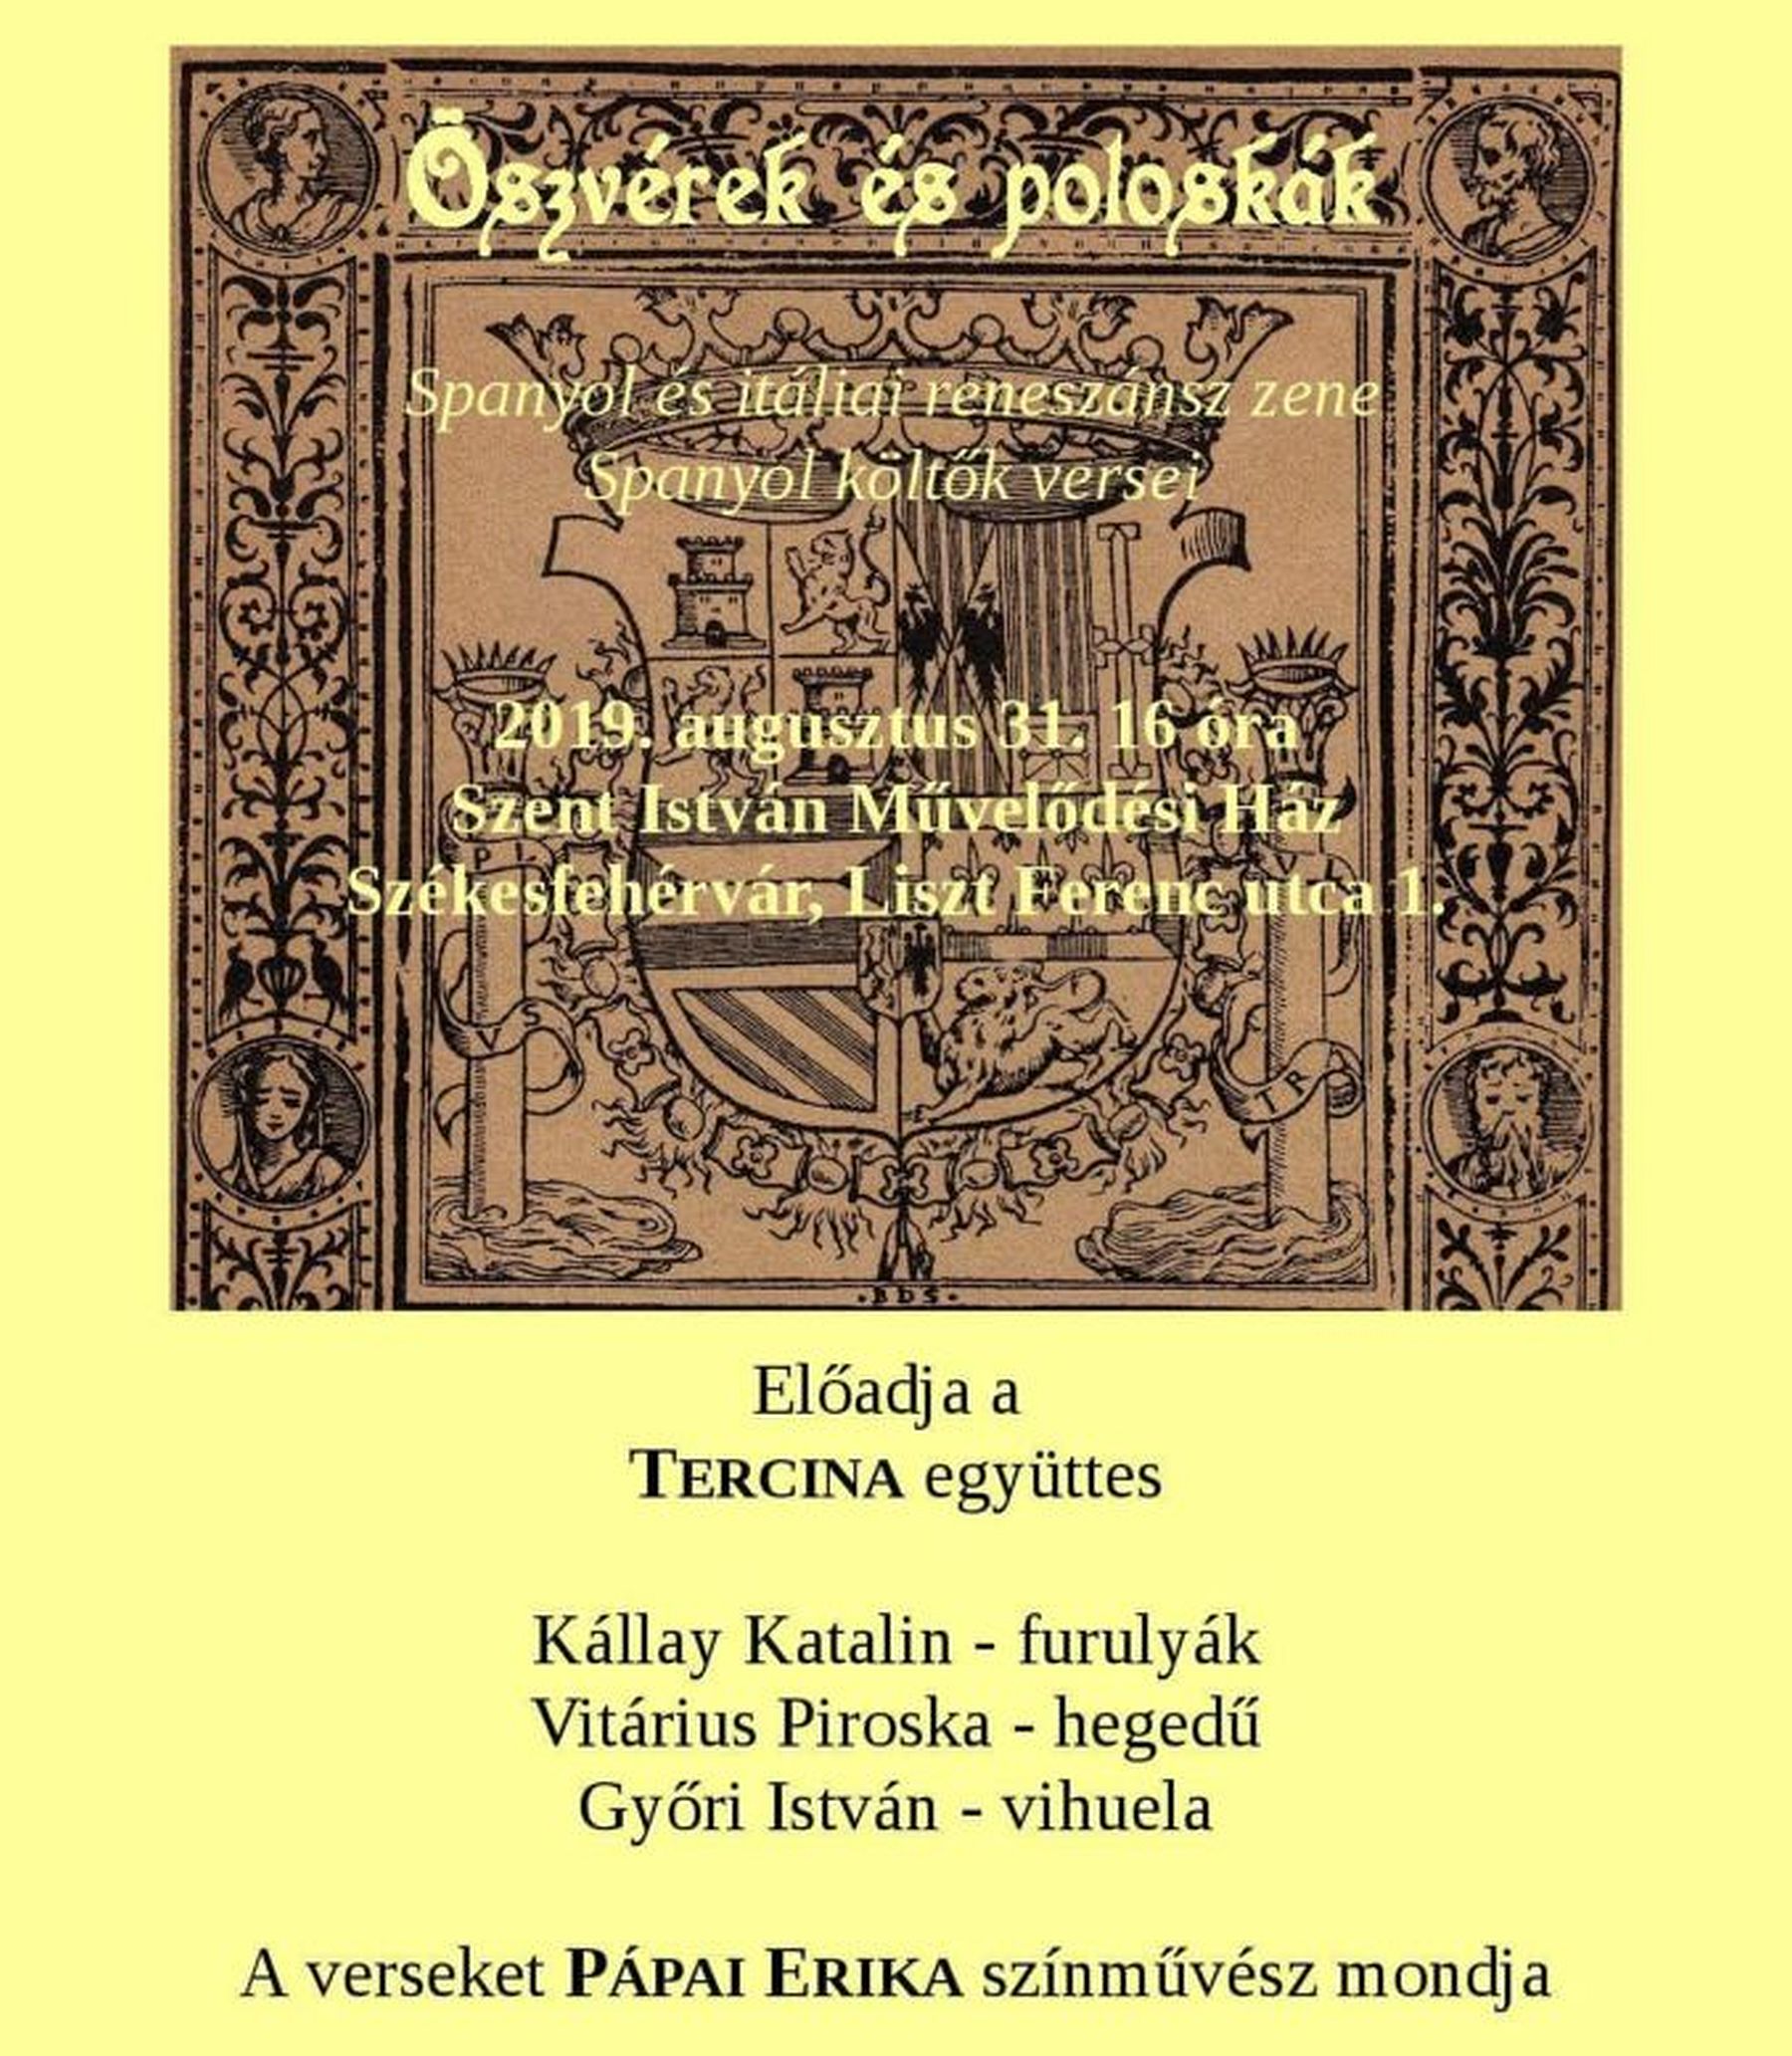 „Öszvérek és poloskák”- reneszánsz zene és költészet a Tercinával és Pápai Erikával